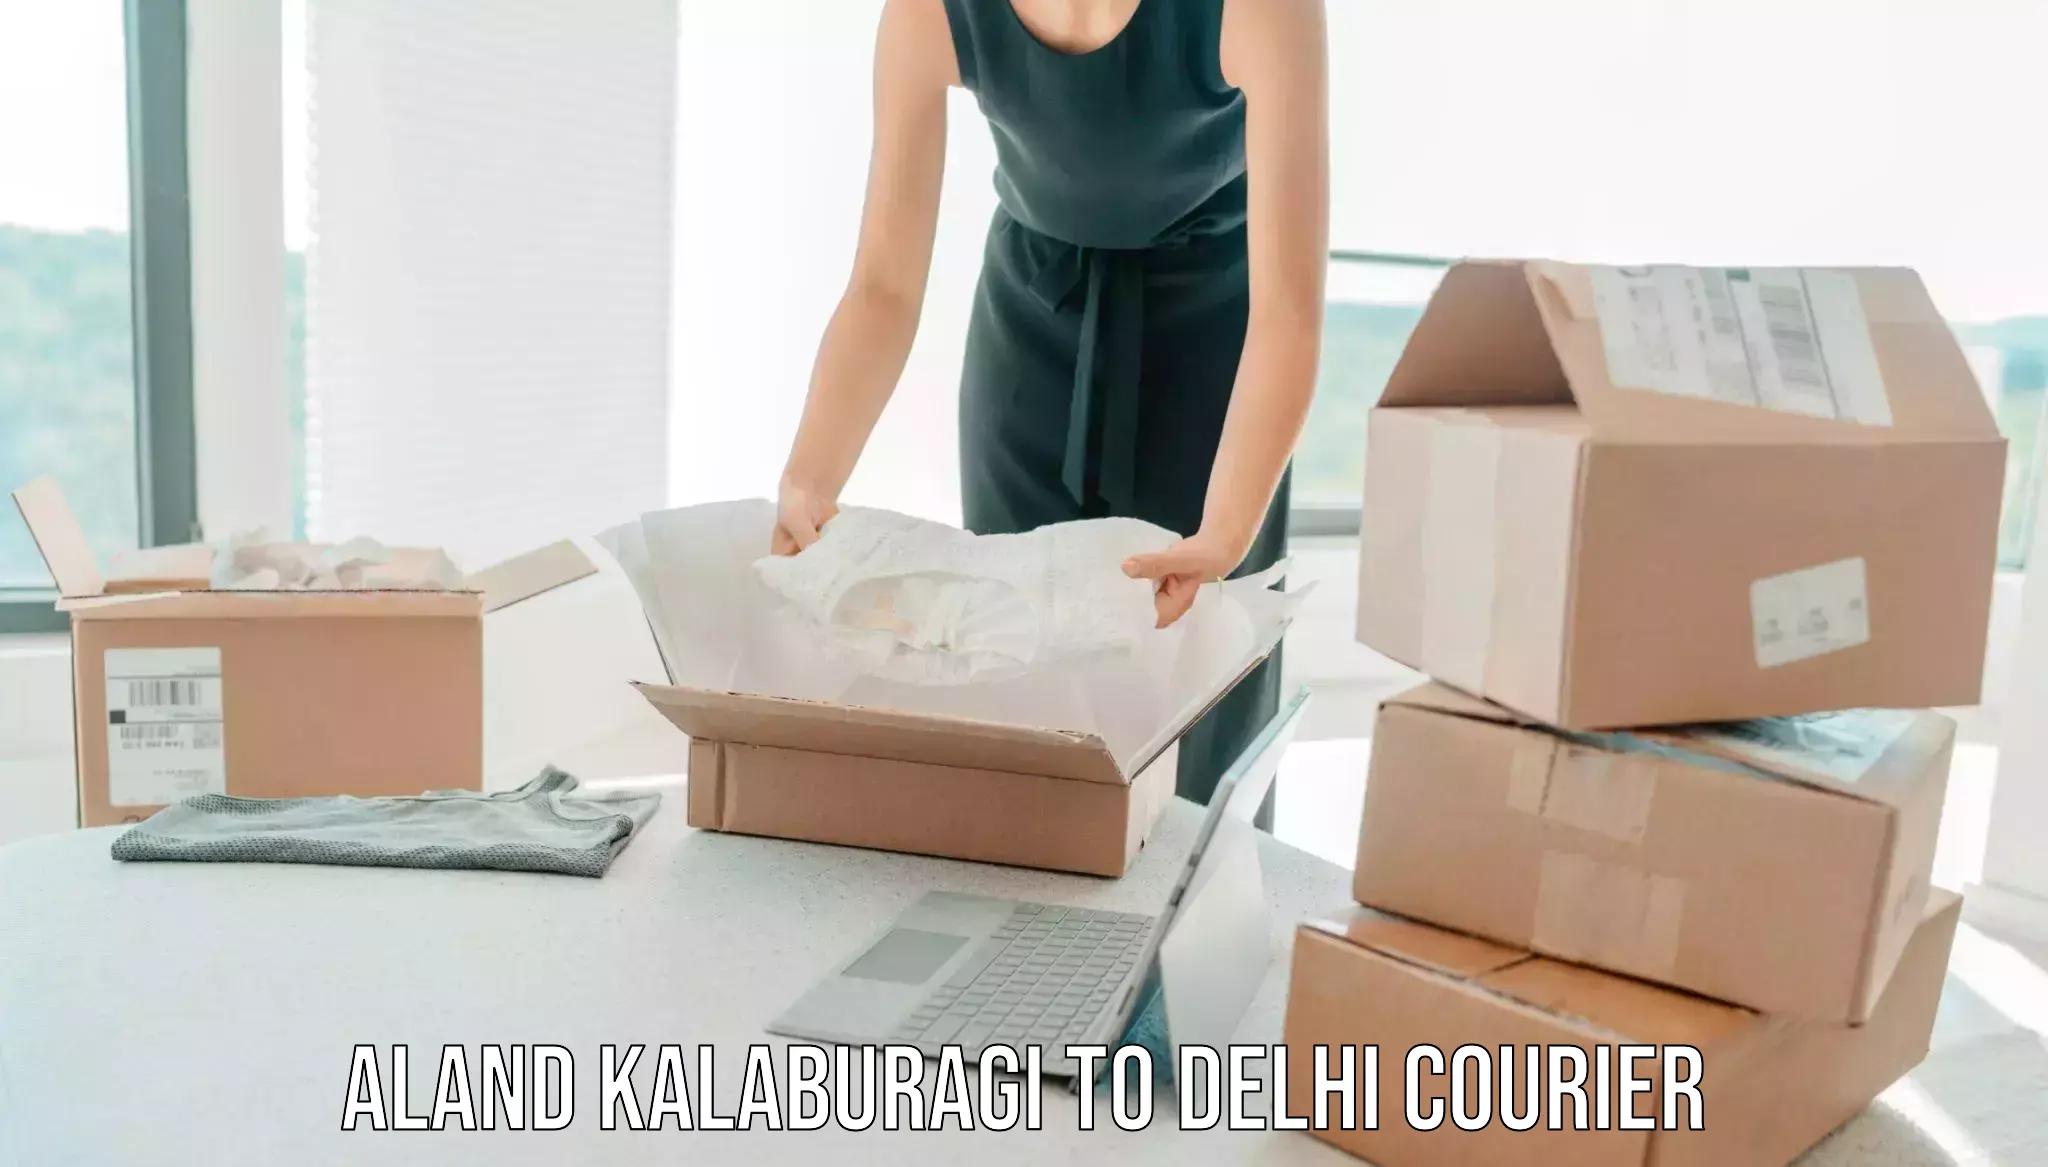 Professional packing services Aland Kalaburagi to Krishna Nagar